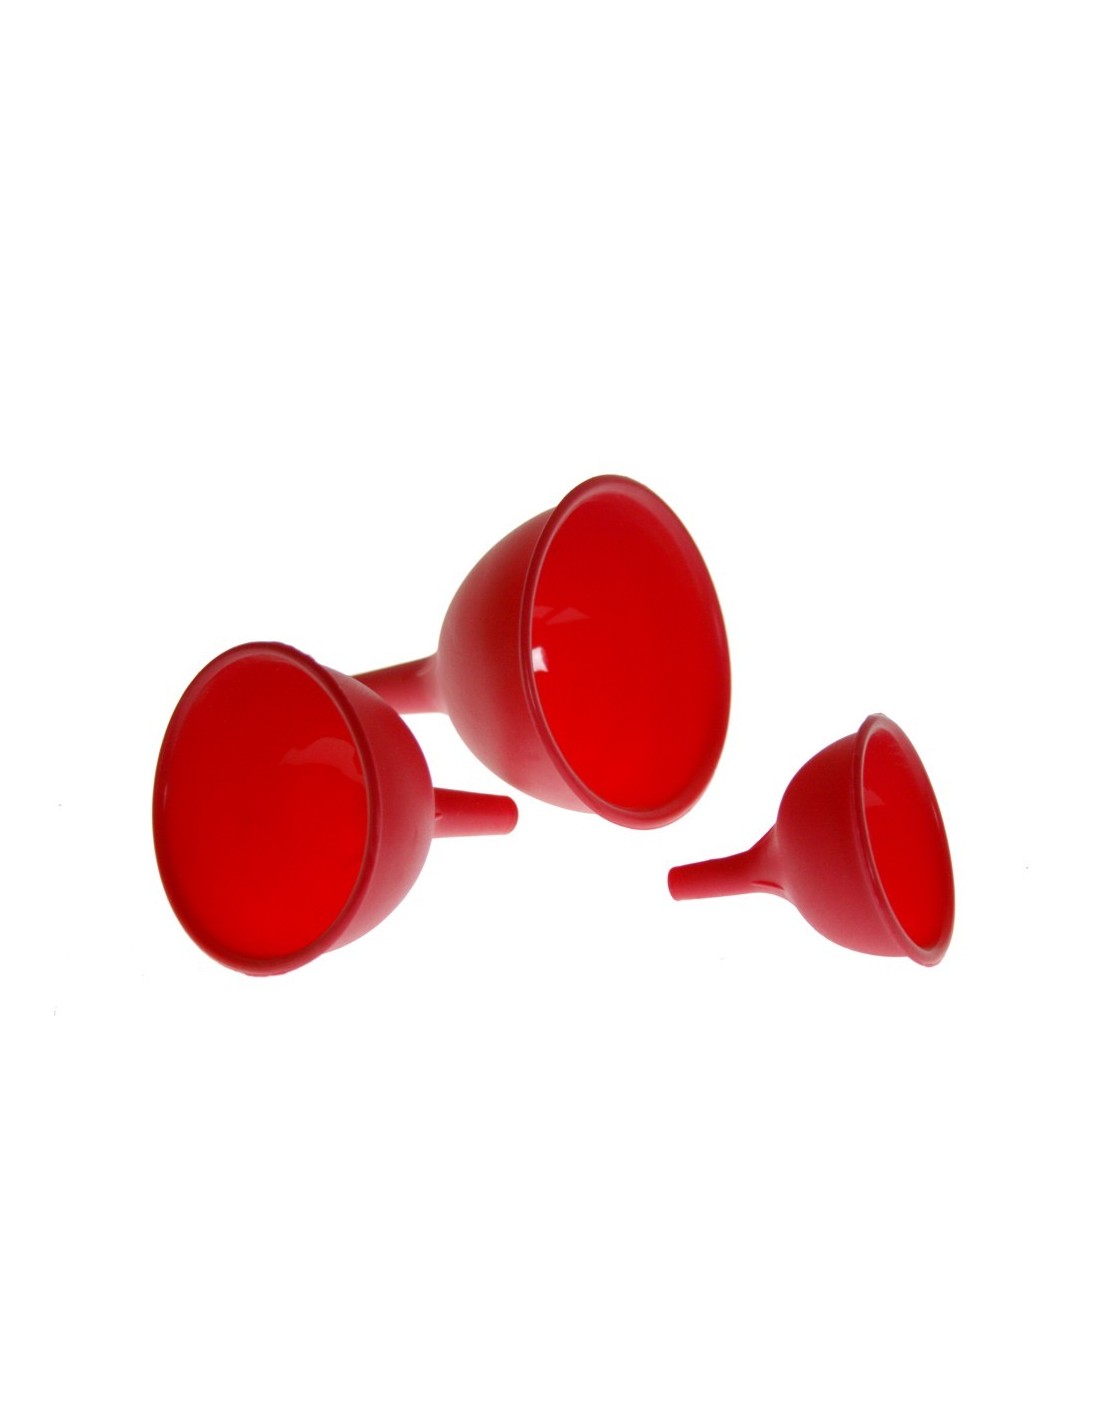 Juego de tres embudos de diferentes tamaños de silicona, de color rojo para cocina casera menaje utensilio de cocina